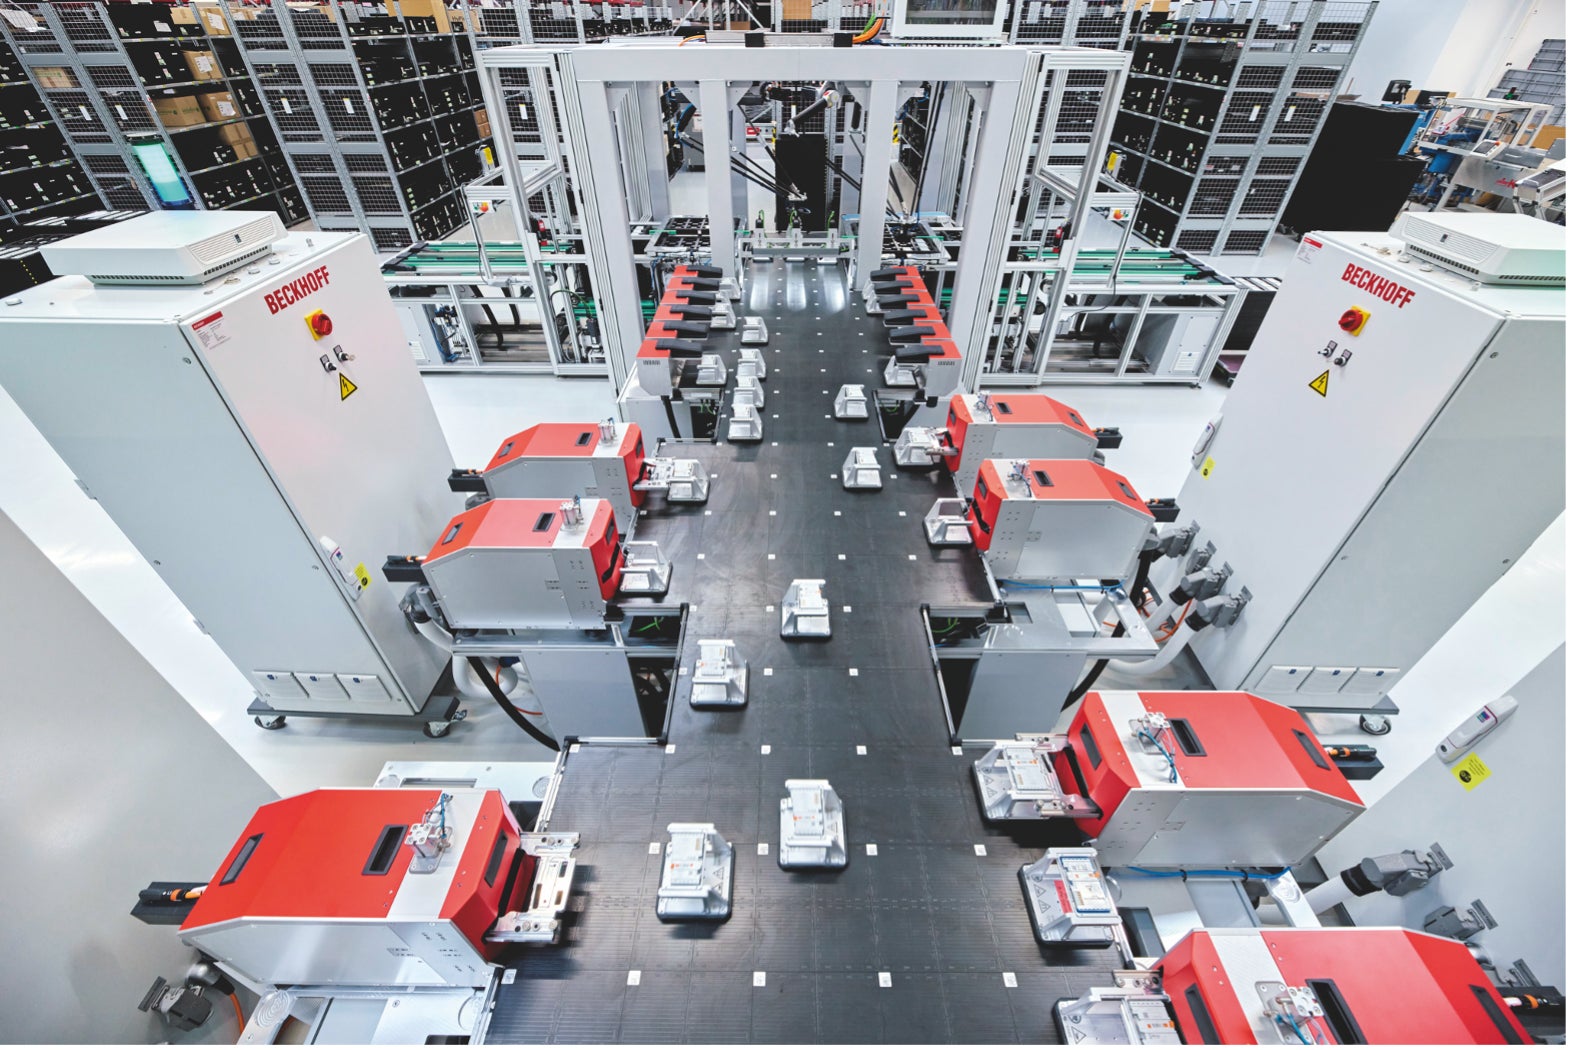 ベッコフドイツ本社の生産現場で稼働するXPlanar。 計100枚のXPlanarのタイル上を浮遊する  33台のマグネットプレートが生産工程を終えた様々なIOターミナルをそれぞれ個別の検査装置  に運び、自動検査を行っている。